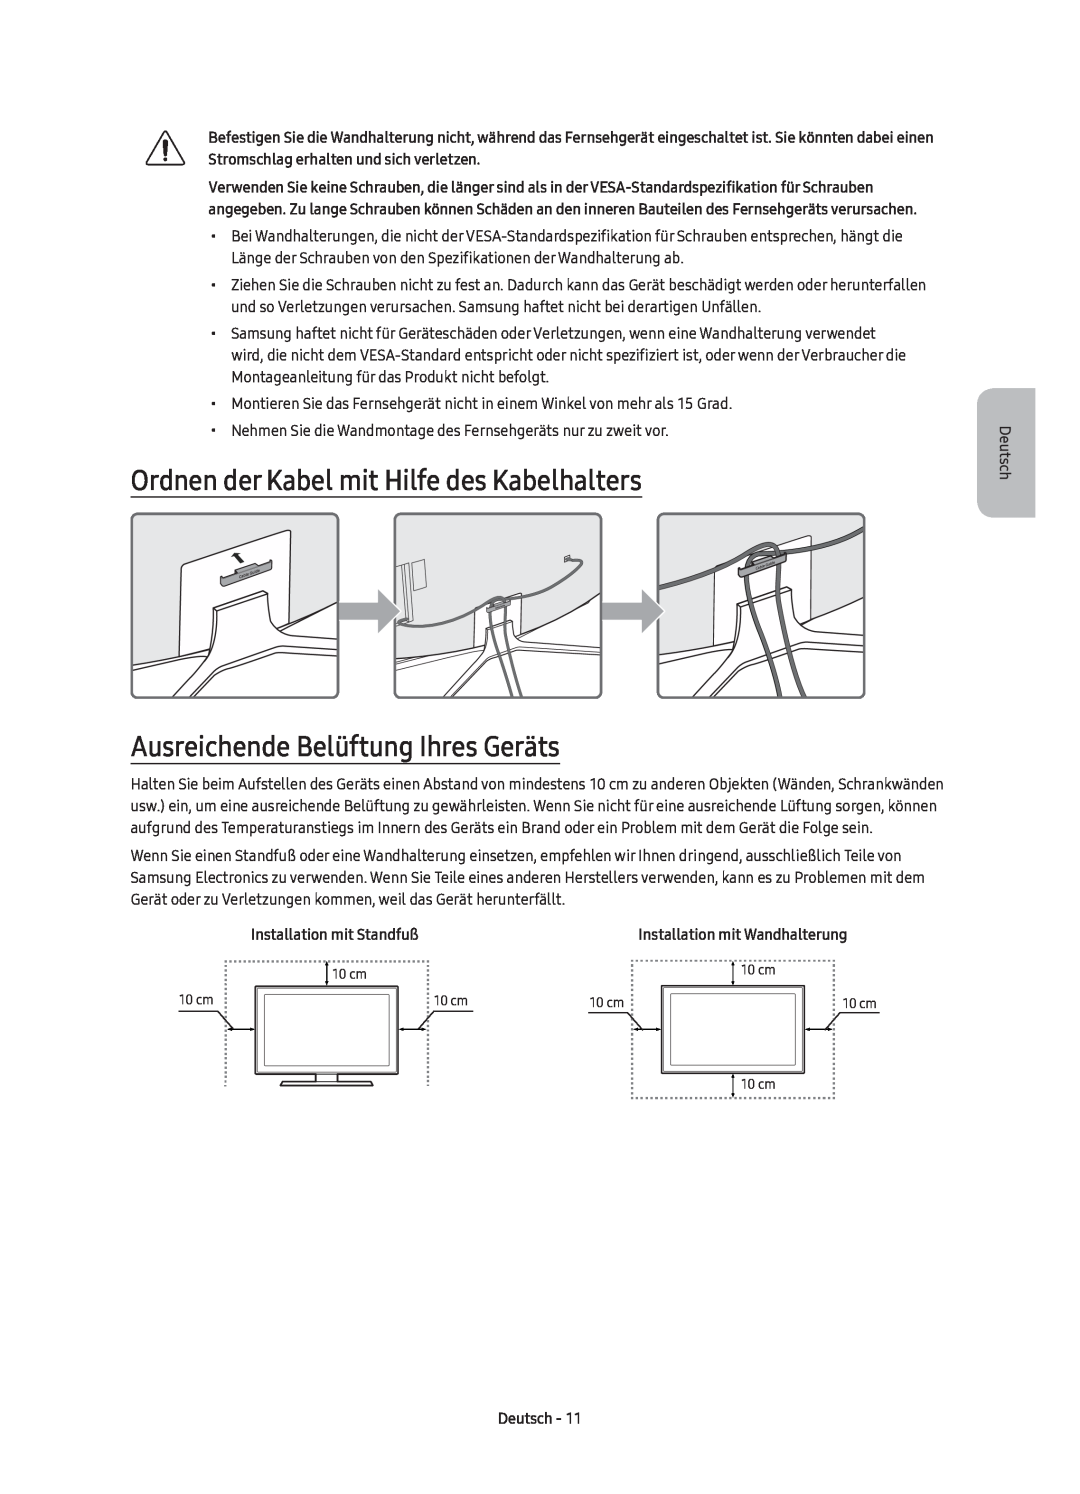 Samsung UE43KU6500UXZT manual Ordnen der Kabel mit Hilfe des Kabelhalters, Ausreichende Belüftung Ihres Geräts, Deutsch 